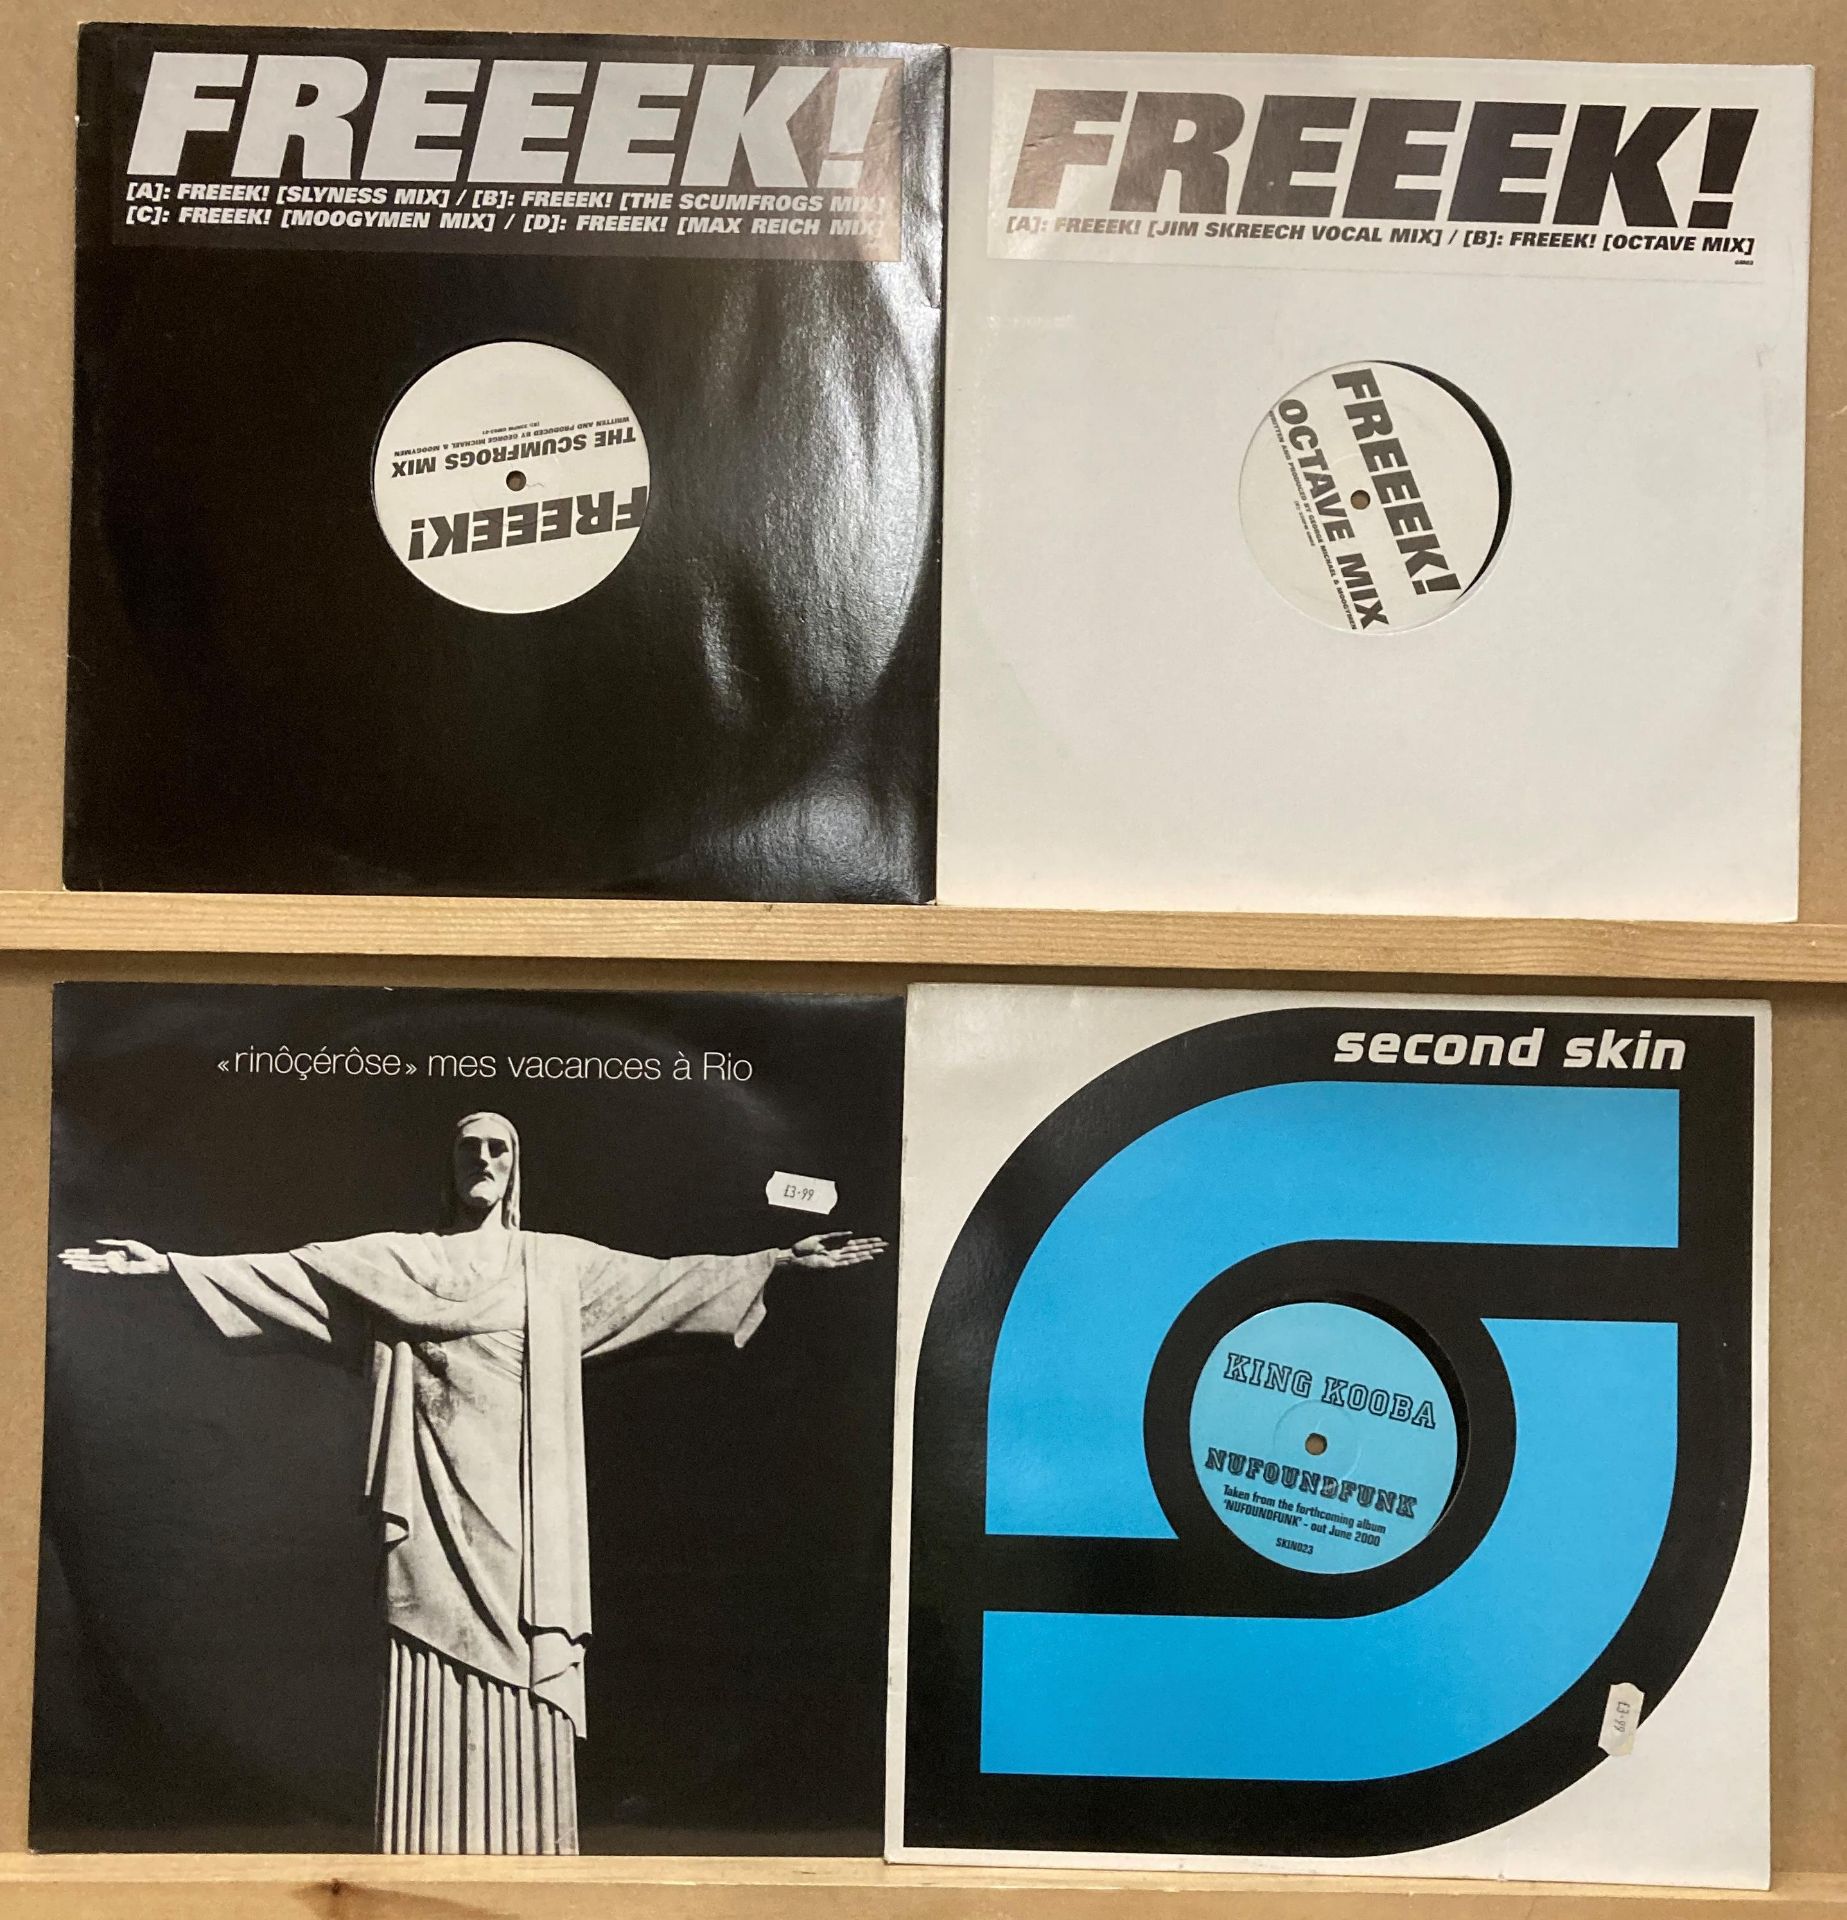 4 X 12” Vinyl - 1 X Freeek! Double Mix & 1 X Freeek! Double Vinyl Mix,